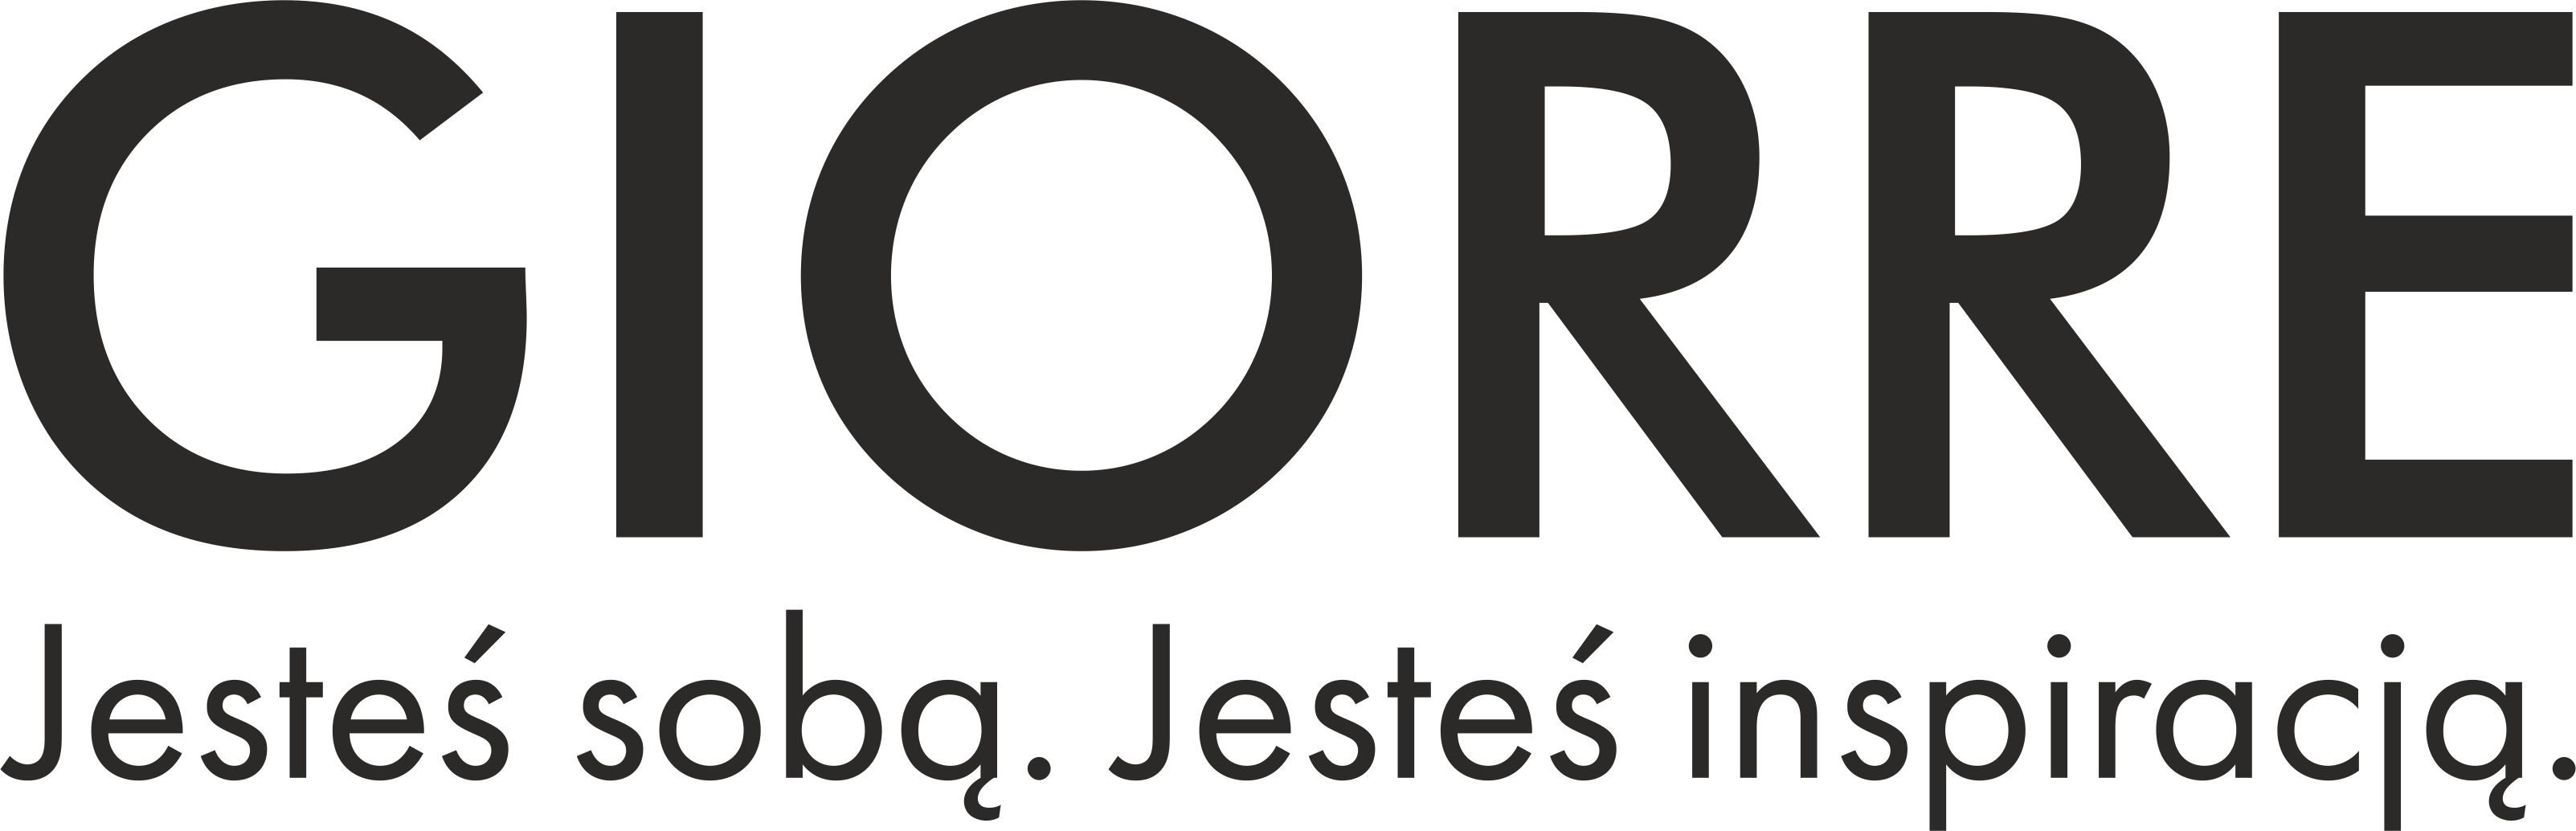 Giorre-logo